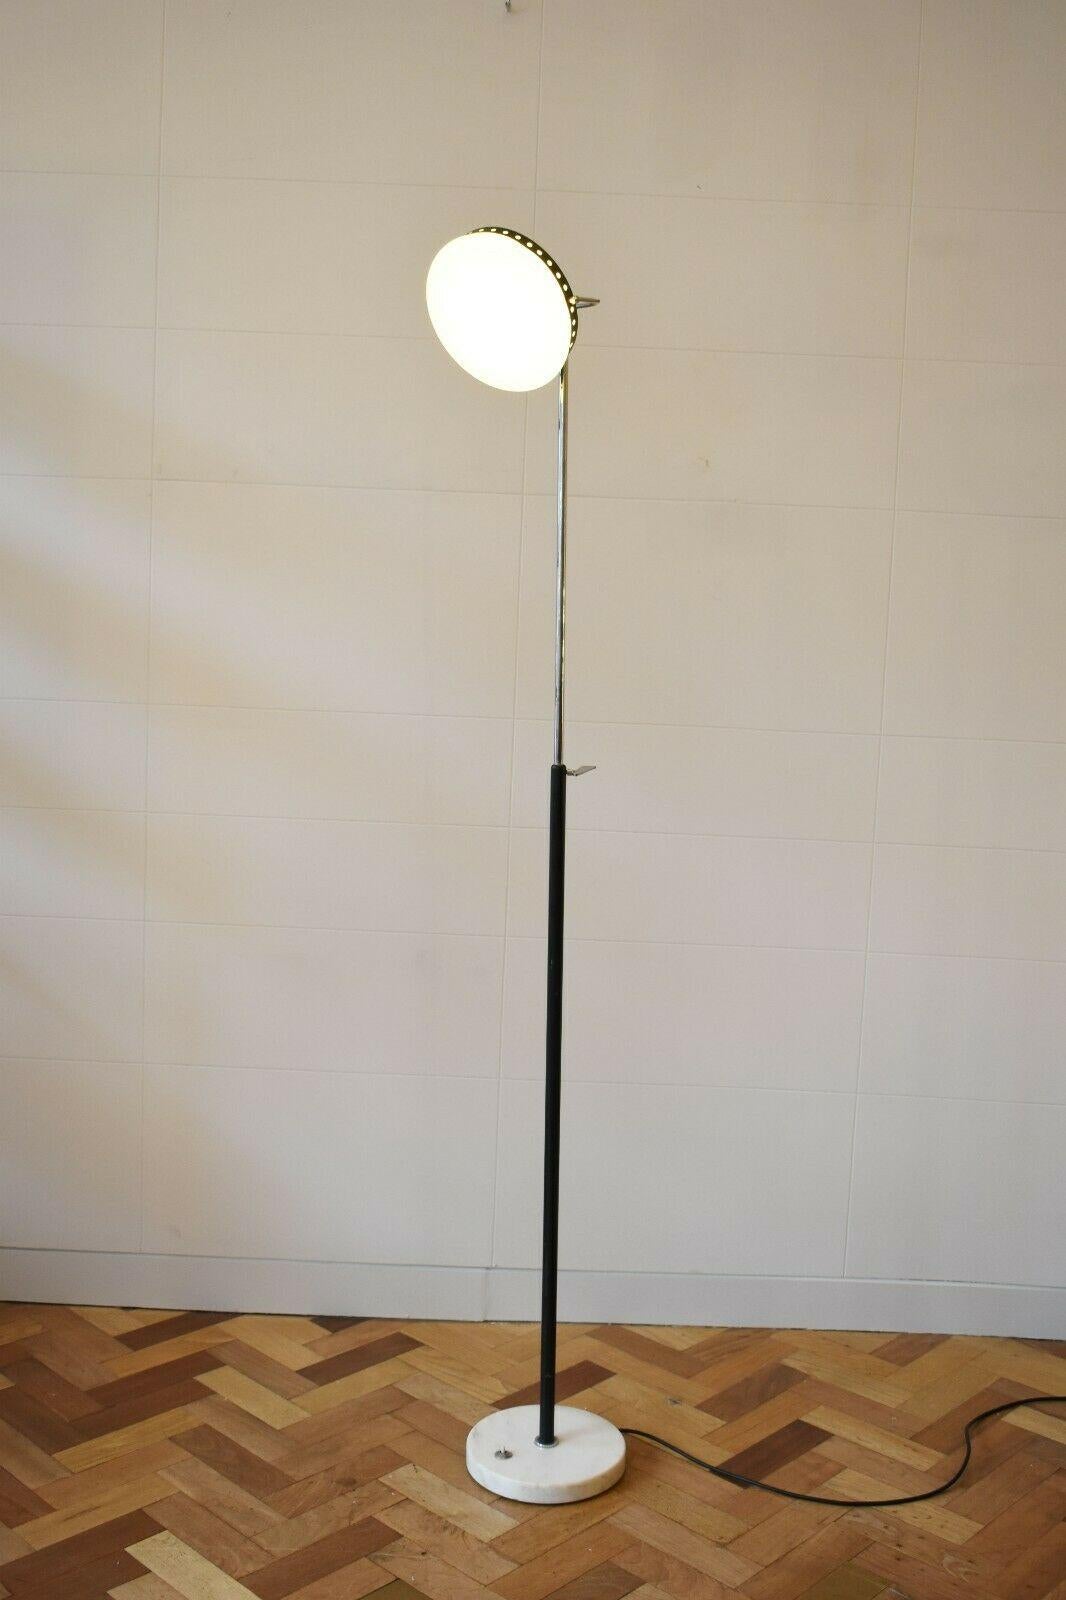 Italienischer Milchglasschirm aus den 1950er Jahren mit verchromtem und schwarz lackiertem Rohrsockel auf einem runden Marmorsockel, von Stillux.

Diese schlichte und elegante Mid-Century Modern-Lampe (sowohl die Leuchte als auch der Stiel) ist so